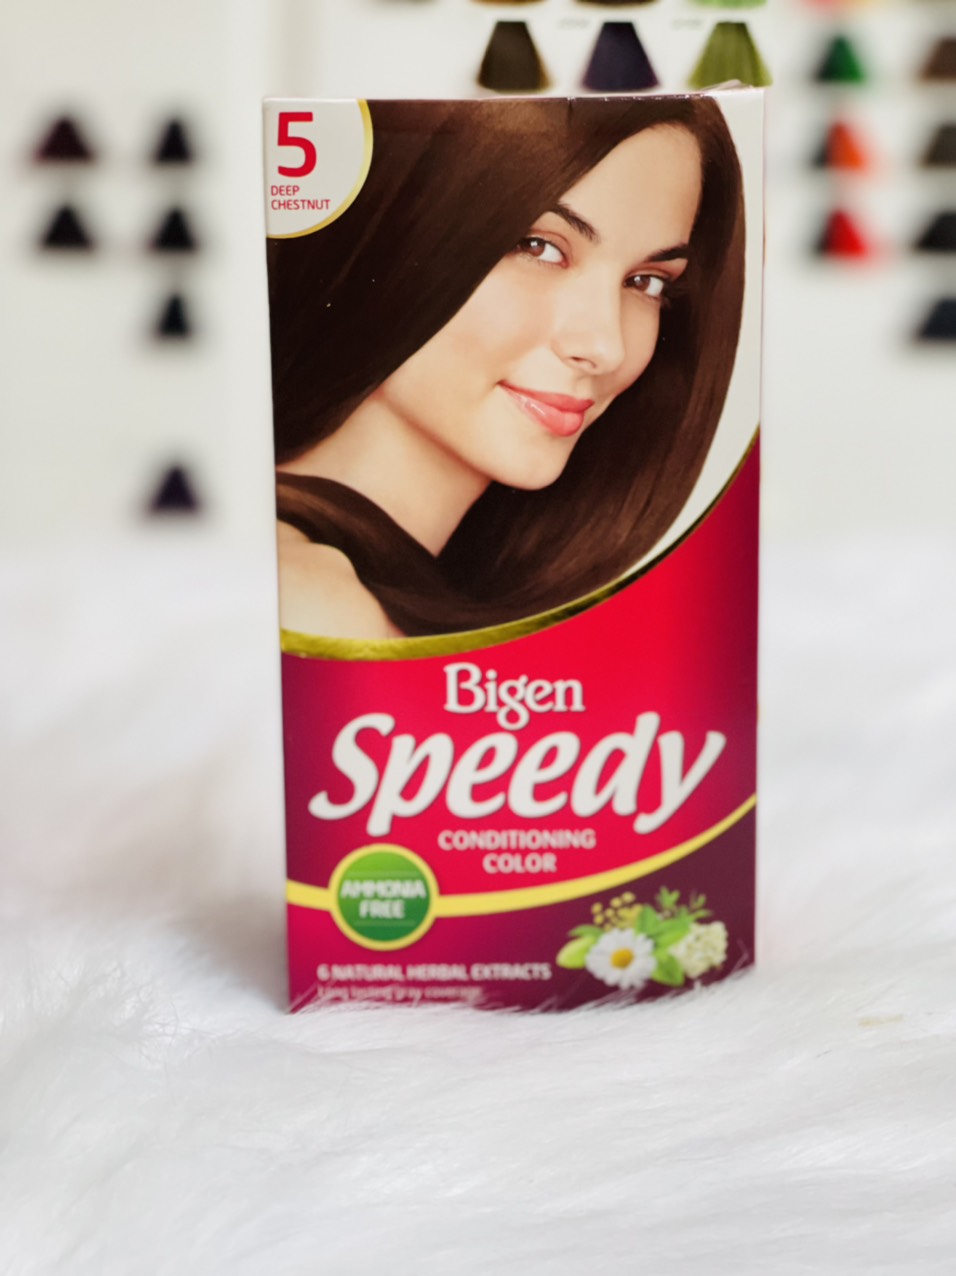 Thuốc nhuộm tóc cao cấp Bigen Speedy conditioning color: Thuốc nhuộm tóc cao cấp Bigen Speedy conditioning color là sự kết hợp hoàn hảo giữa chất lượng và chăm sóc tóc. Công thức độc đáo mang lại màu tóc sáng bóng và đảm bảo tóc không bị hư tổn. Hãy để mái tóc được yêu chiều như những ngôi sao đình đám với sản phẩm này.